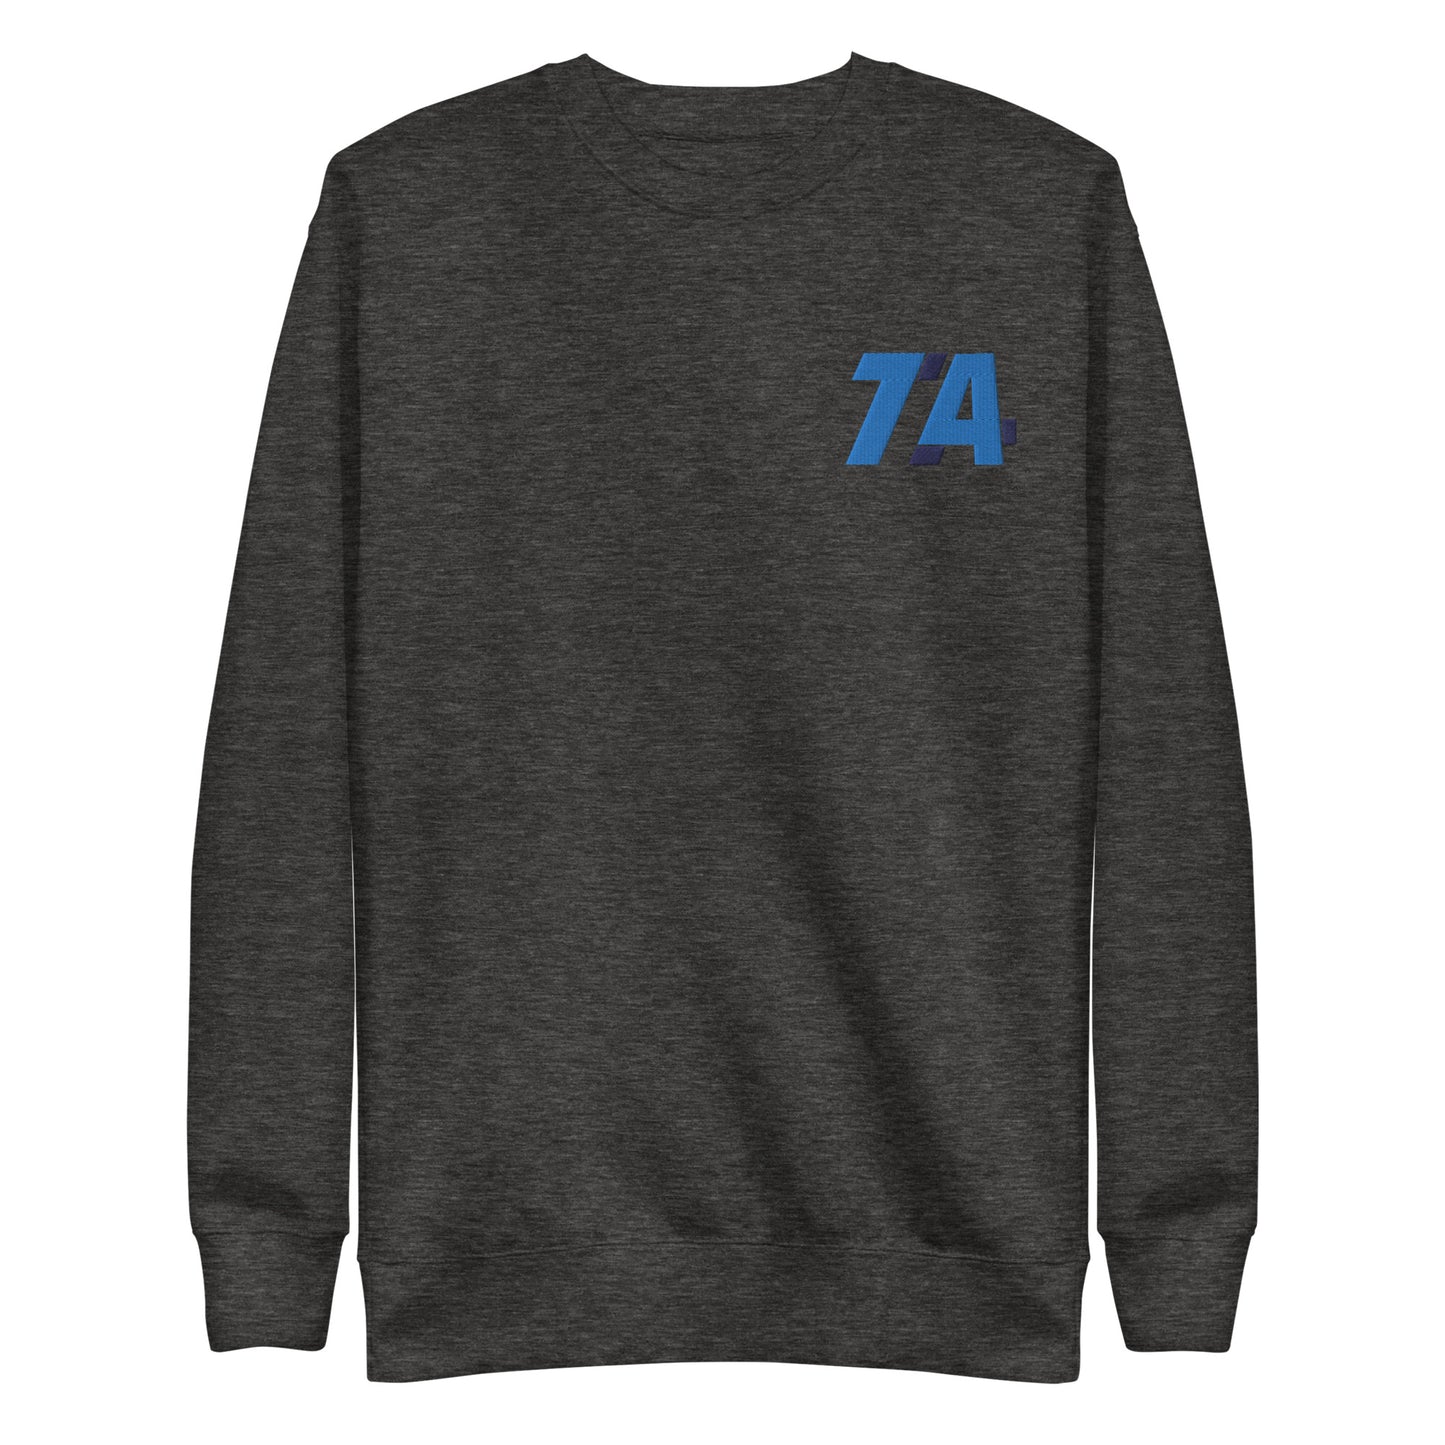 TA74 Premium Sweatshirt